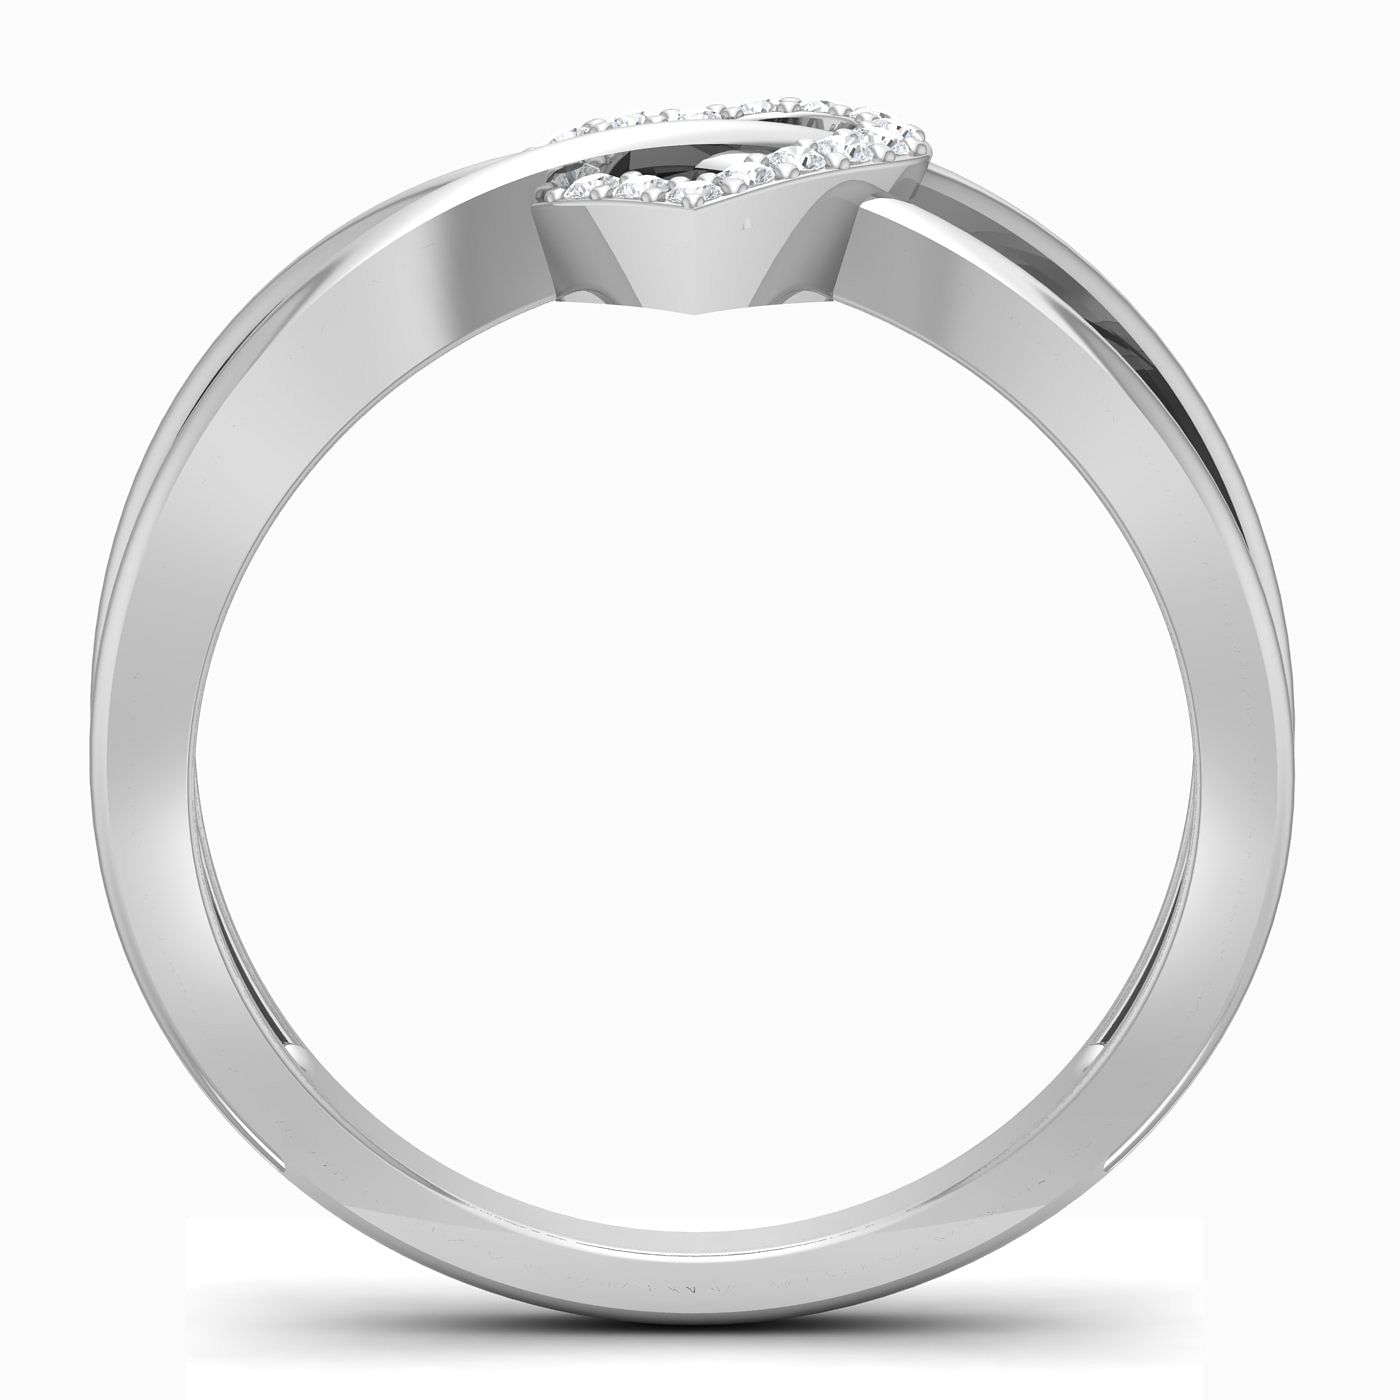 Diamond Heart Promise Ring White Gold For Anniversary Gift